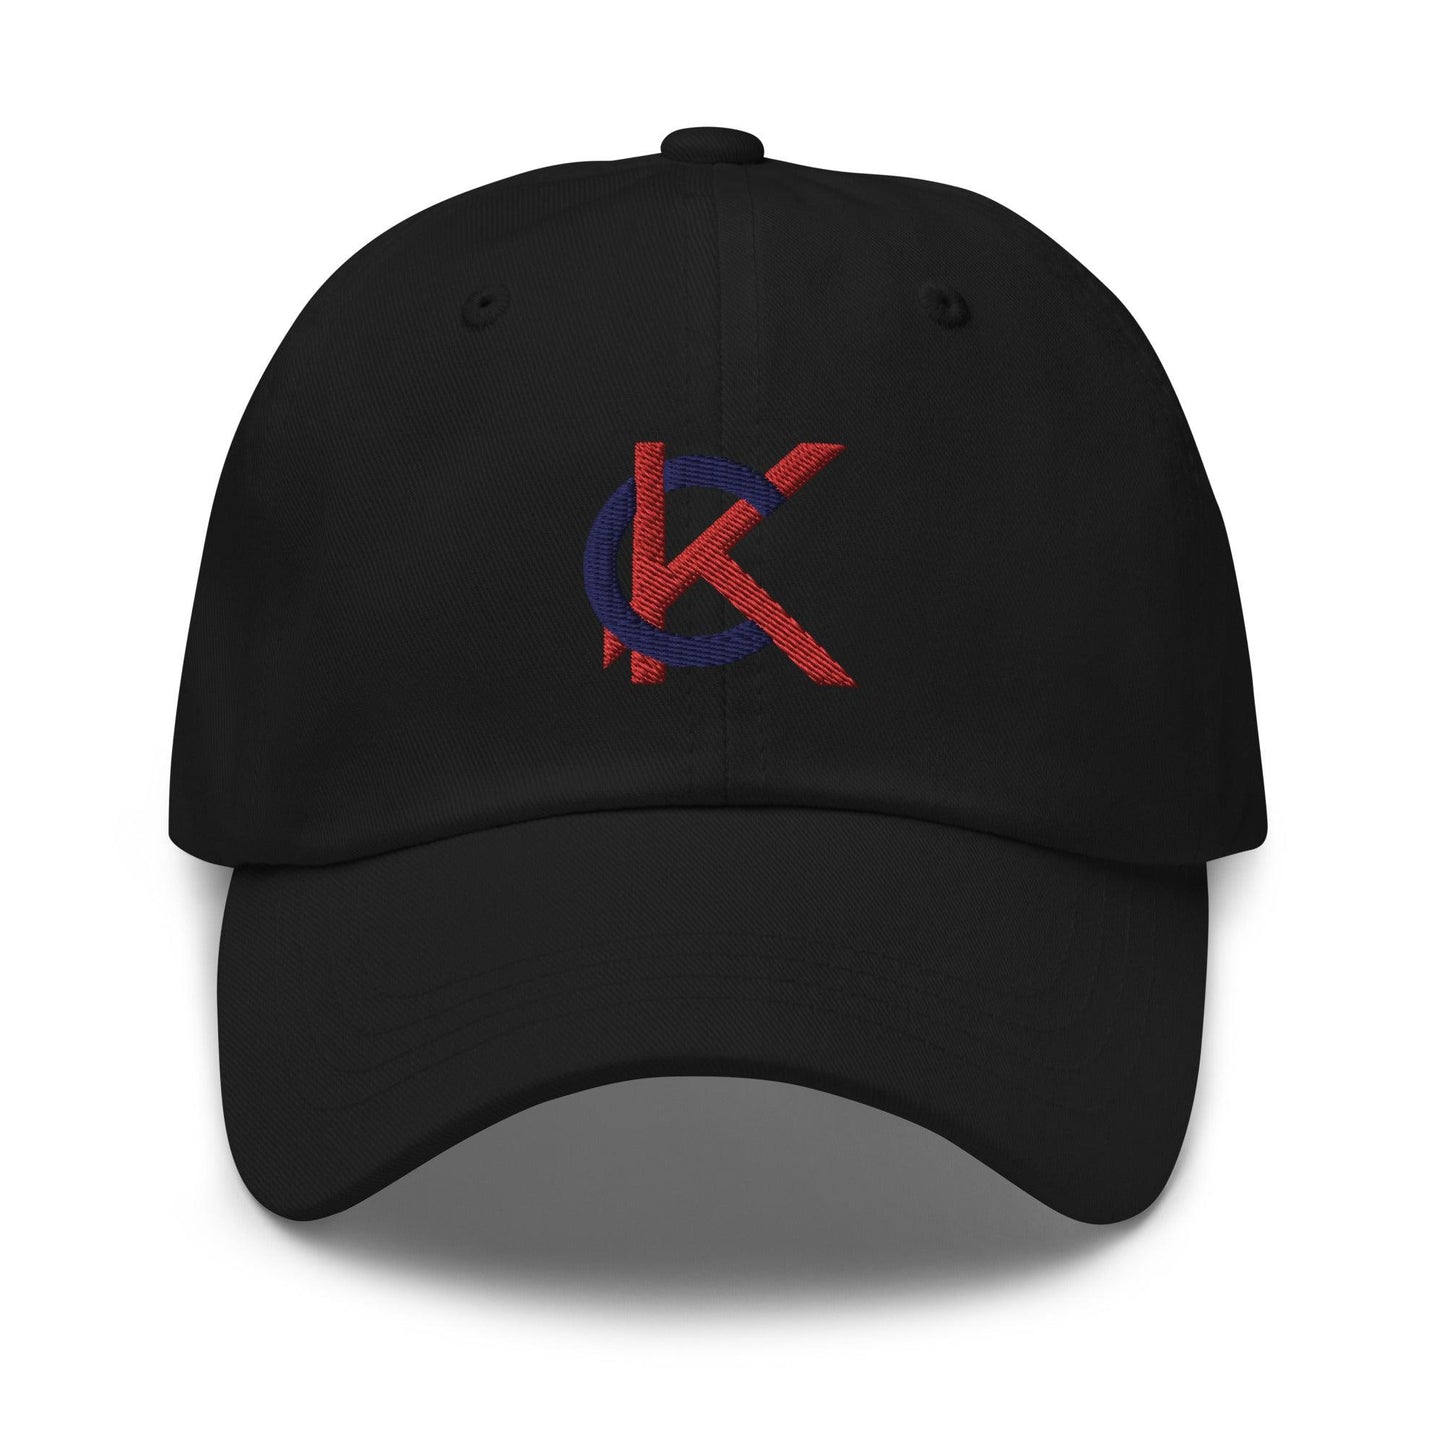 Kutter Crawford "Elite" hat - Fan Arch